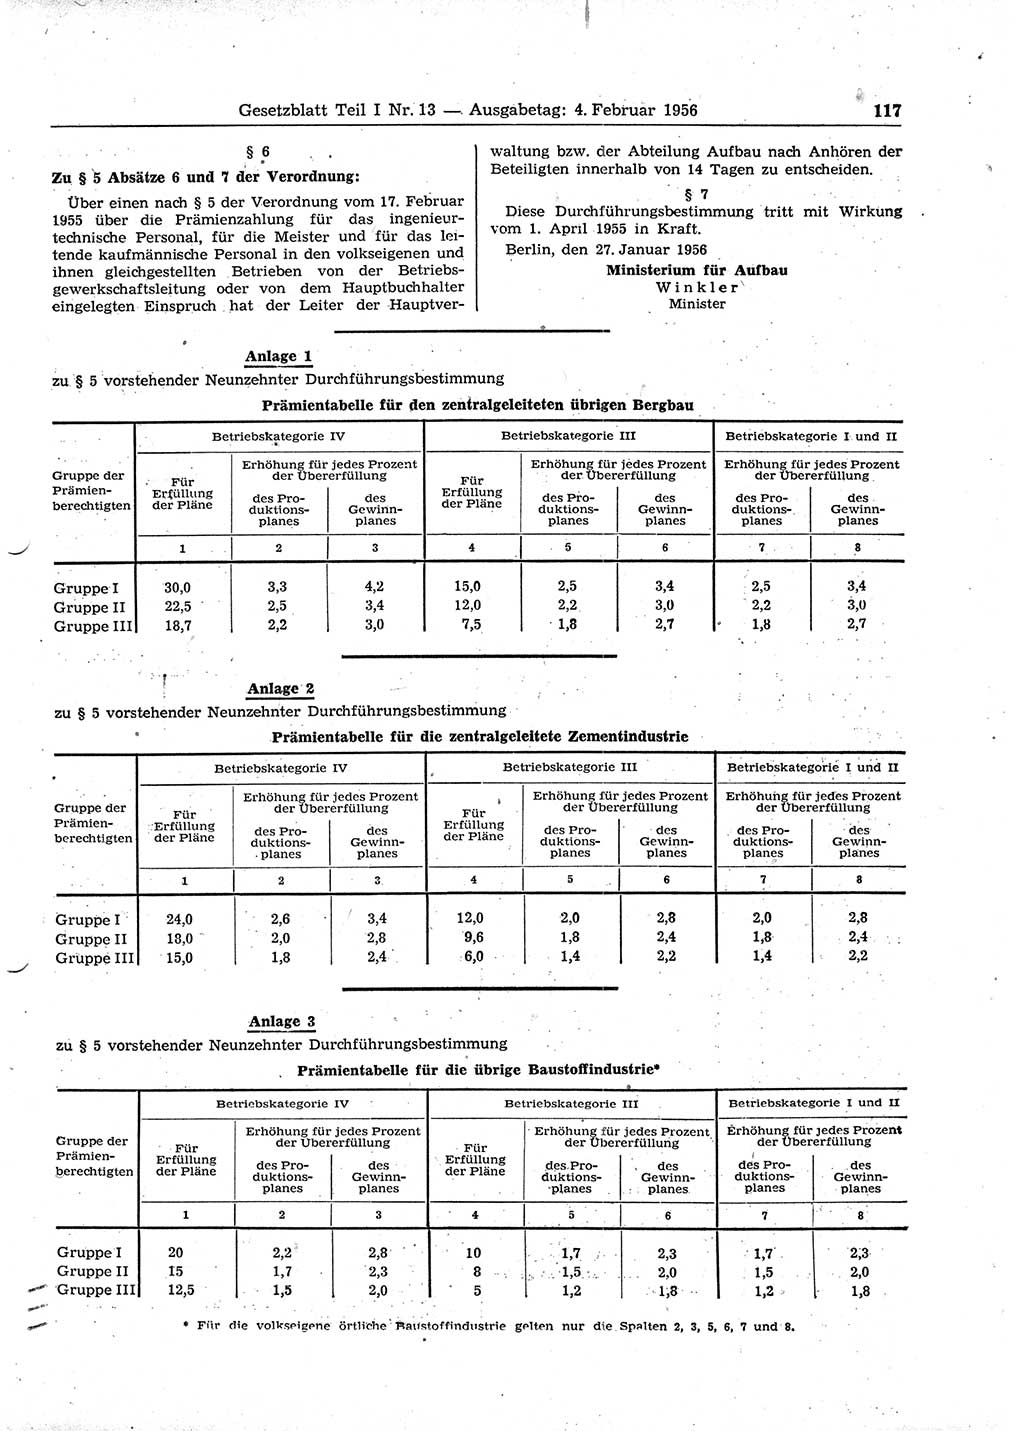 Gesetzblatt (GBl.) der Deutschen Demokratischen Republik (DDR) Teil Ⅰ 1956, Seite 117 (GBl. DDR Ⅰ 1956, S. 117)